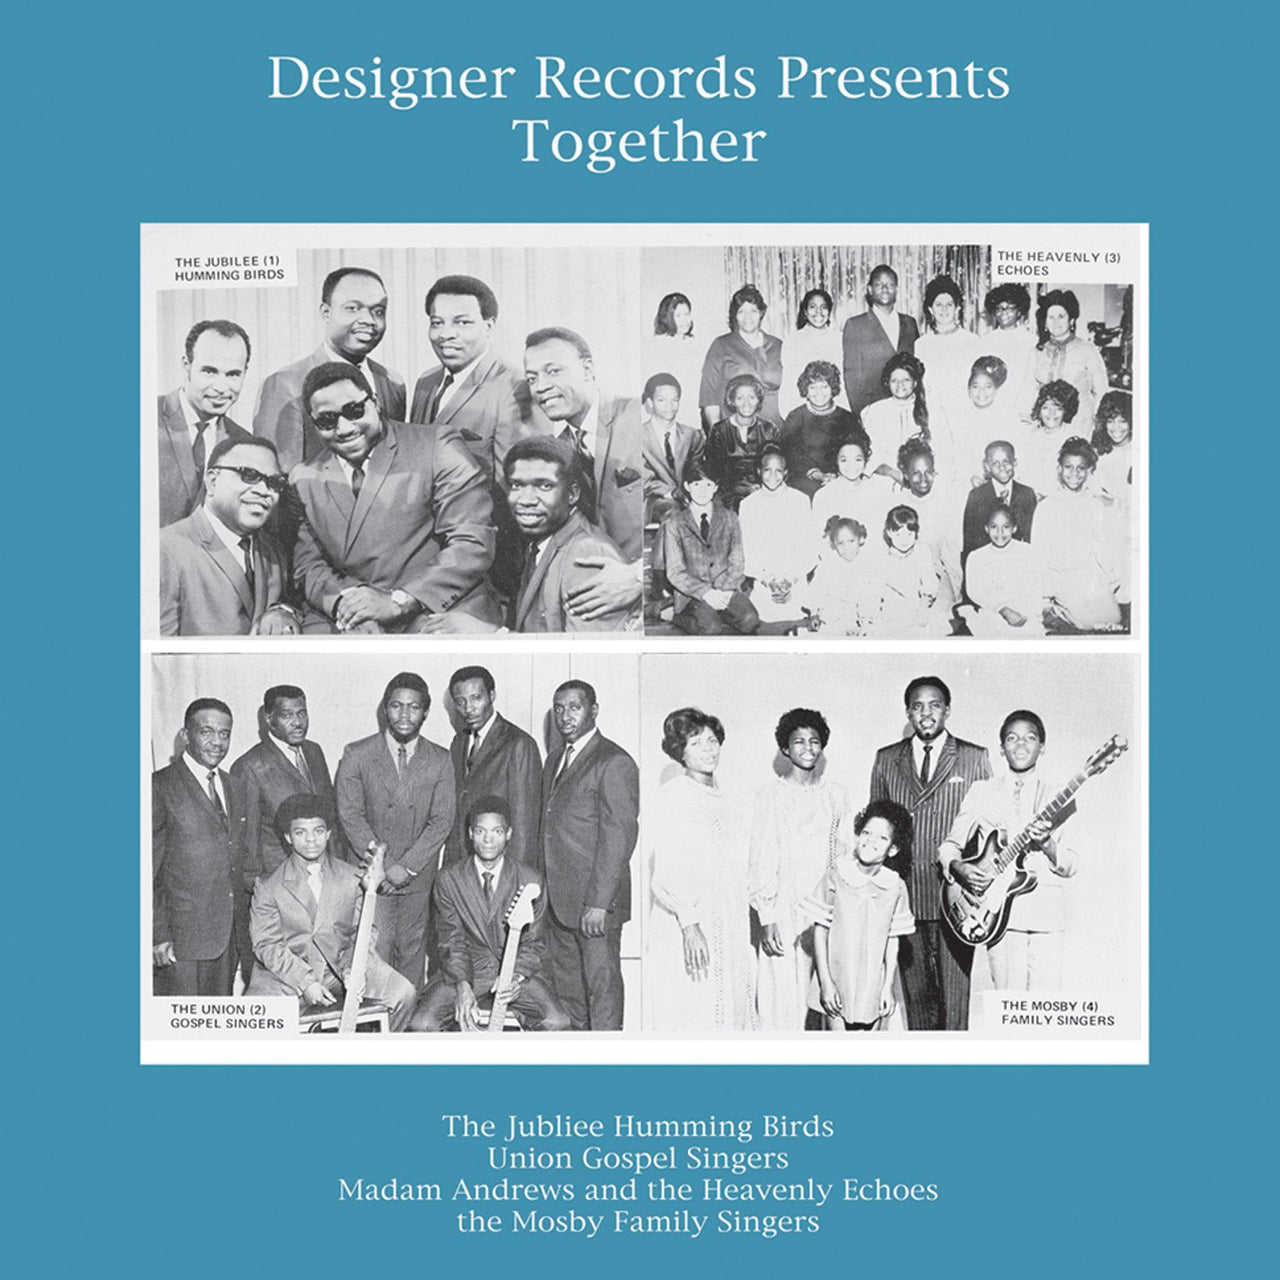 Together - Designer Records